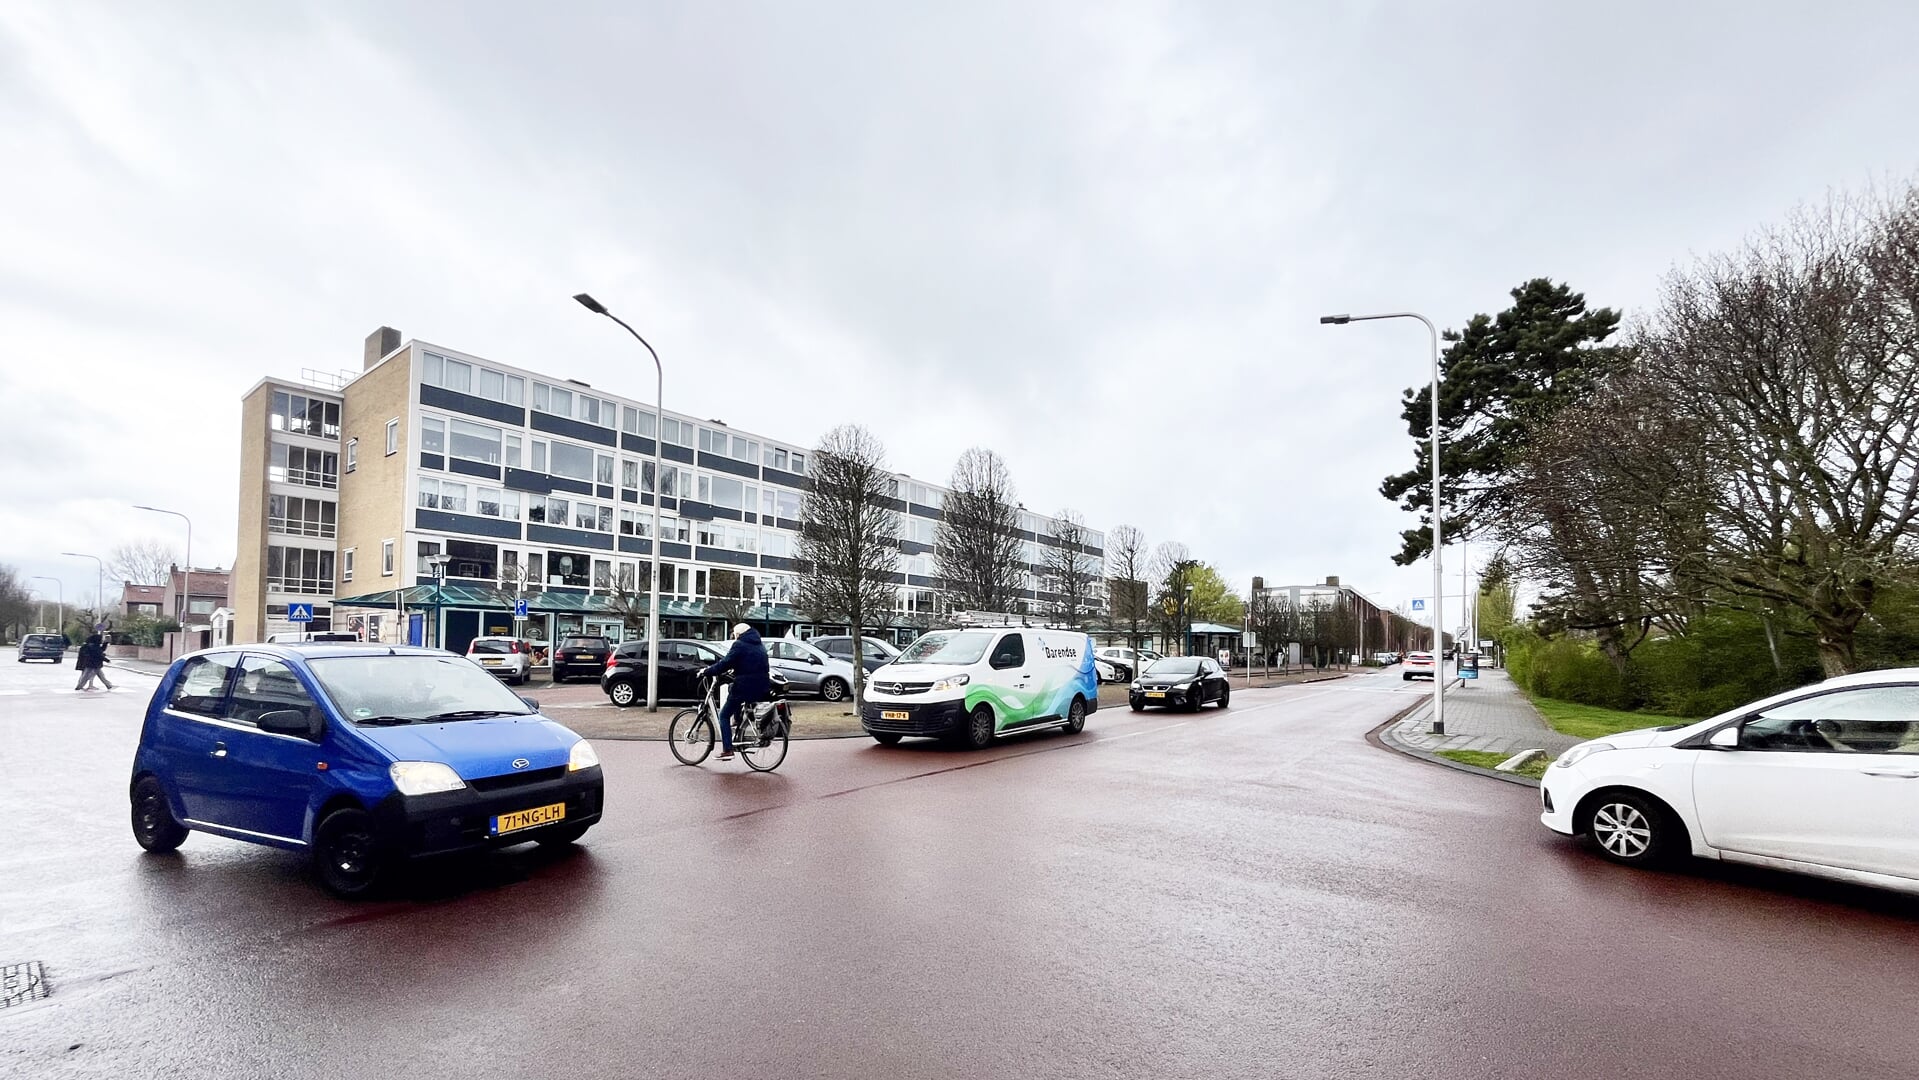 De winkeliersvereniging willen met de omwonenden in gesprek over de aanpak van het kruispunt Koningin Julianalaan en Boslaan en over het opknappen van het winkelcentrum.  | Foto: LW